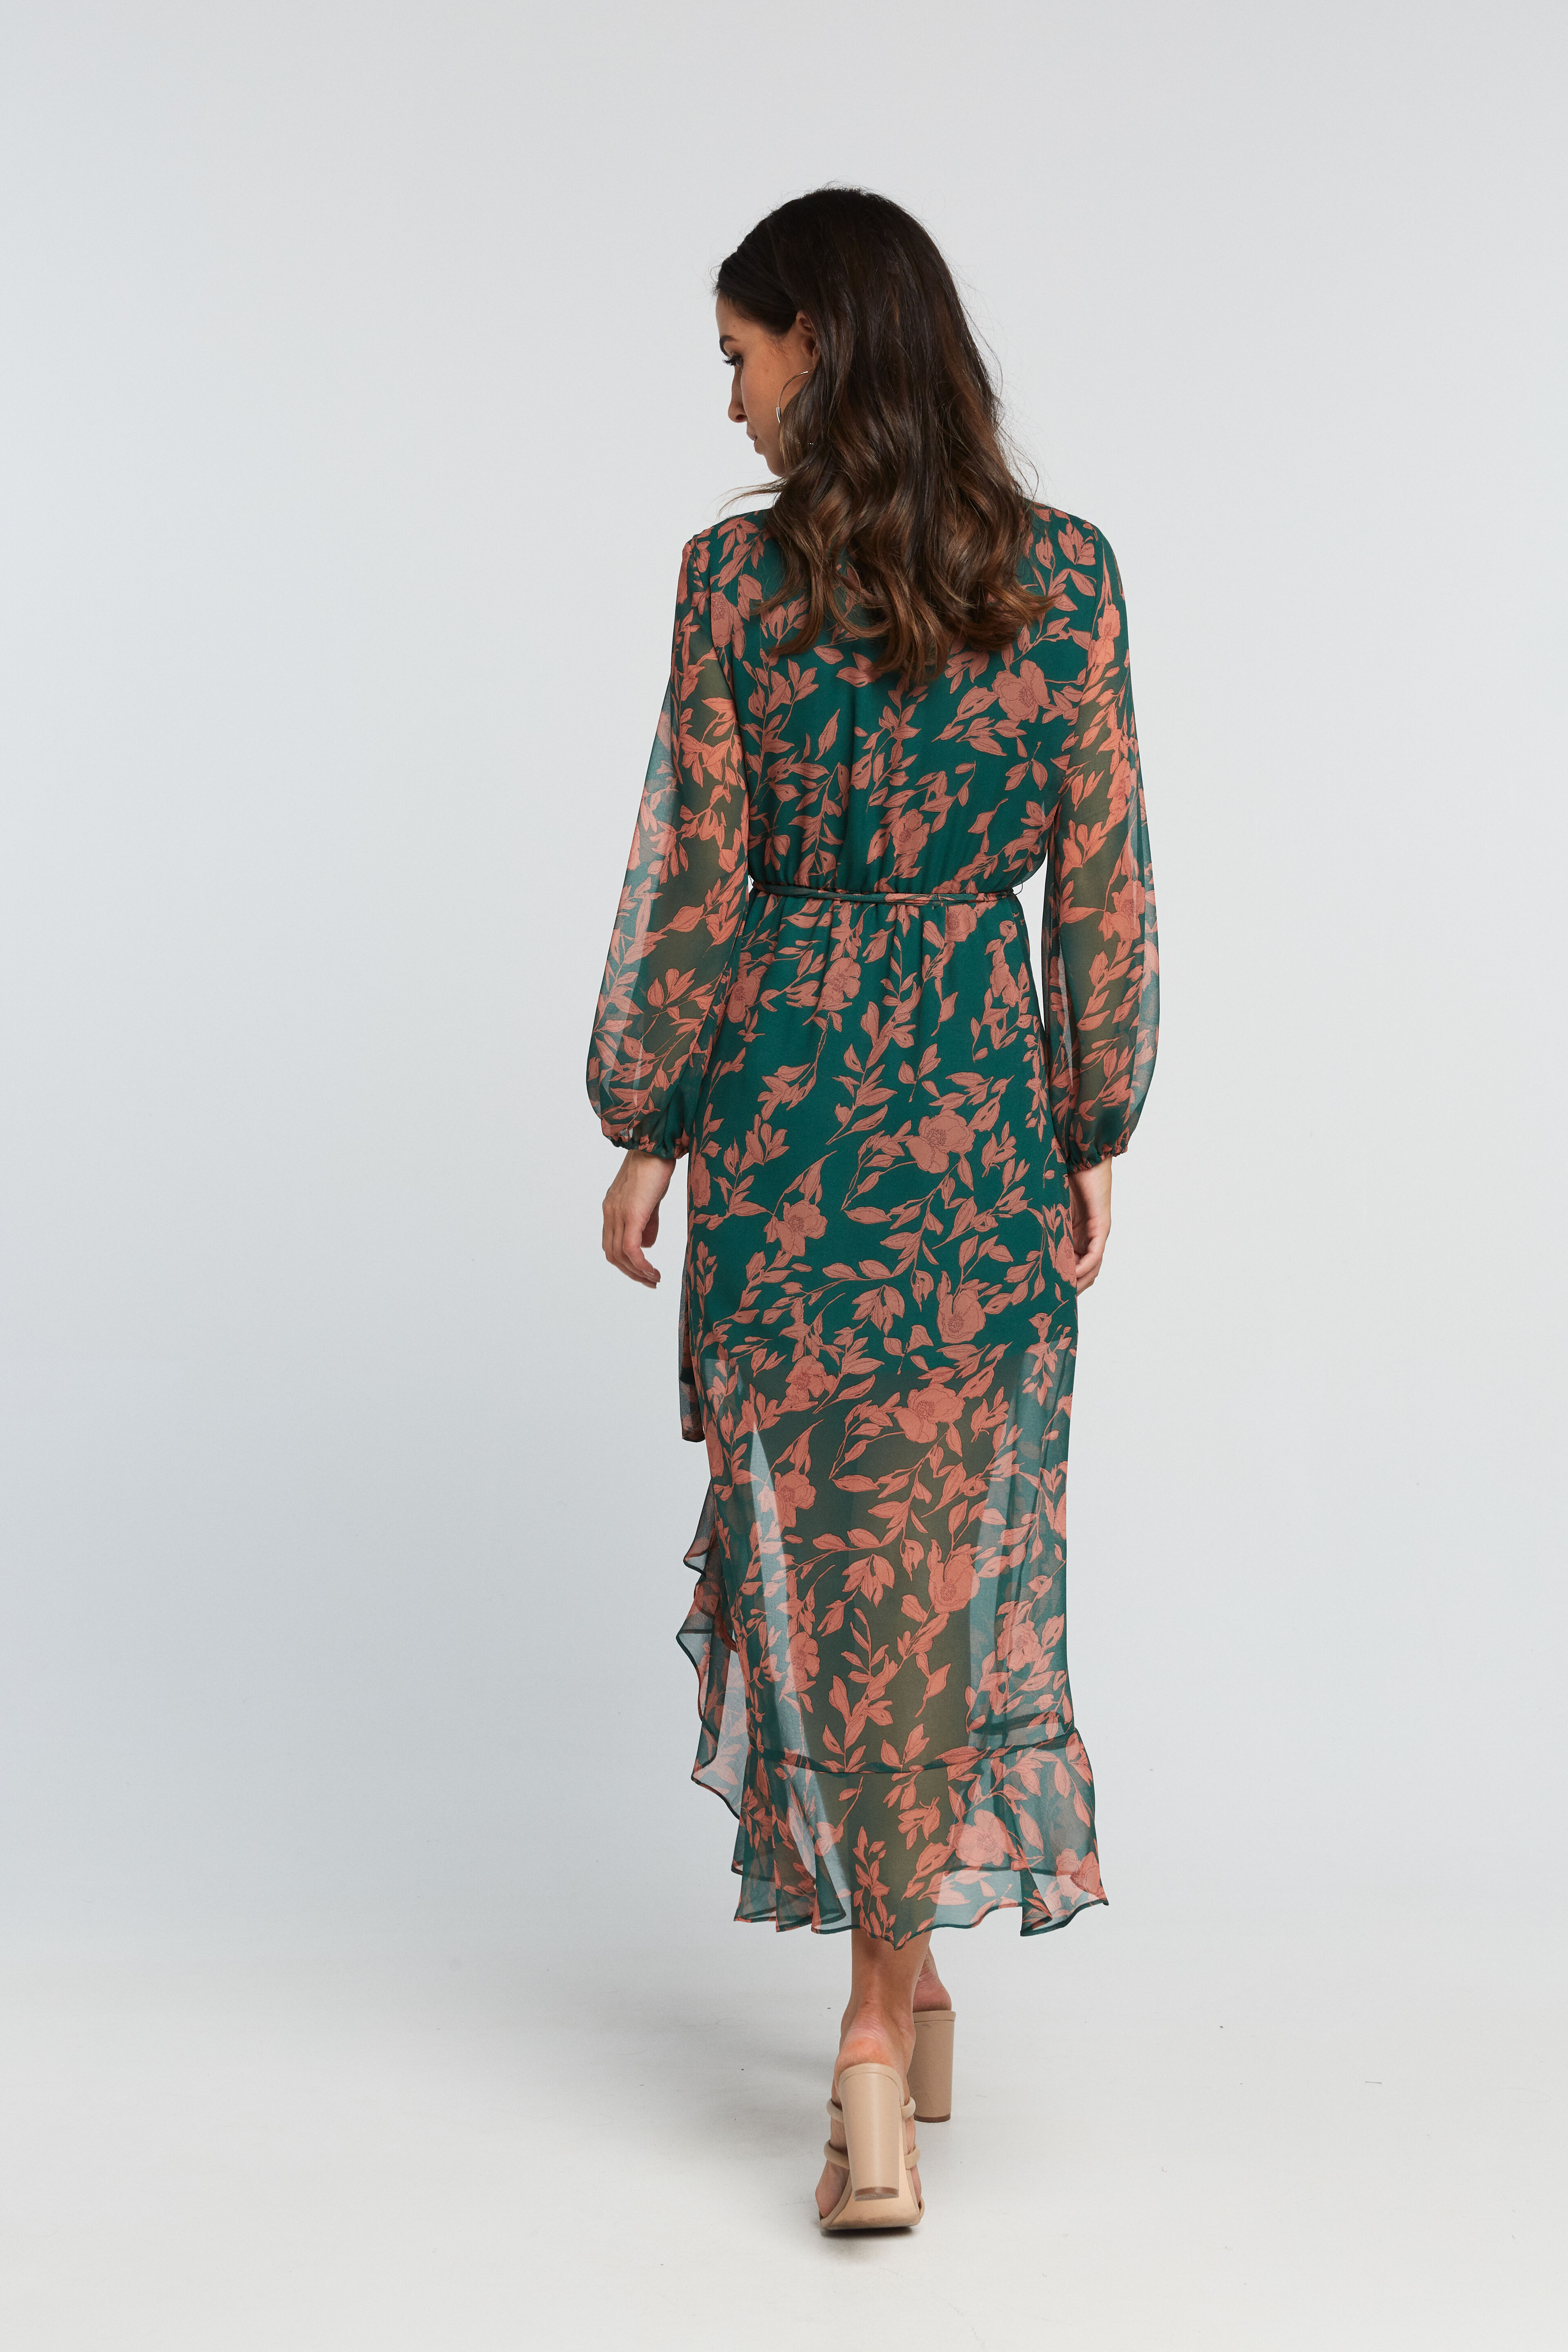 Justine Floral Dress in Grn Flrl | Bardot